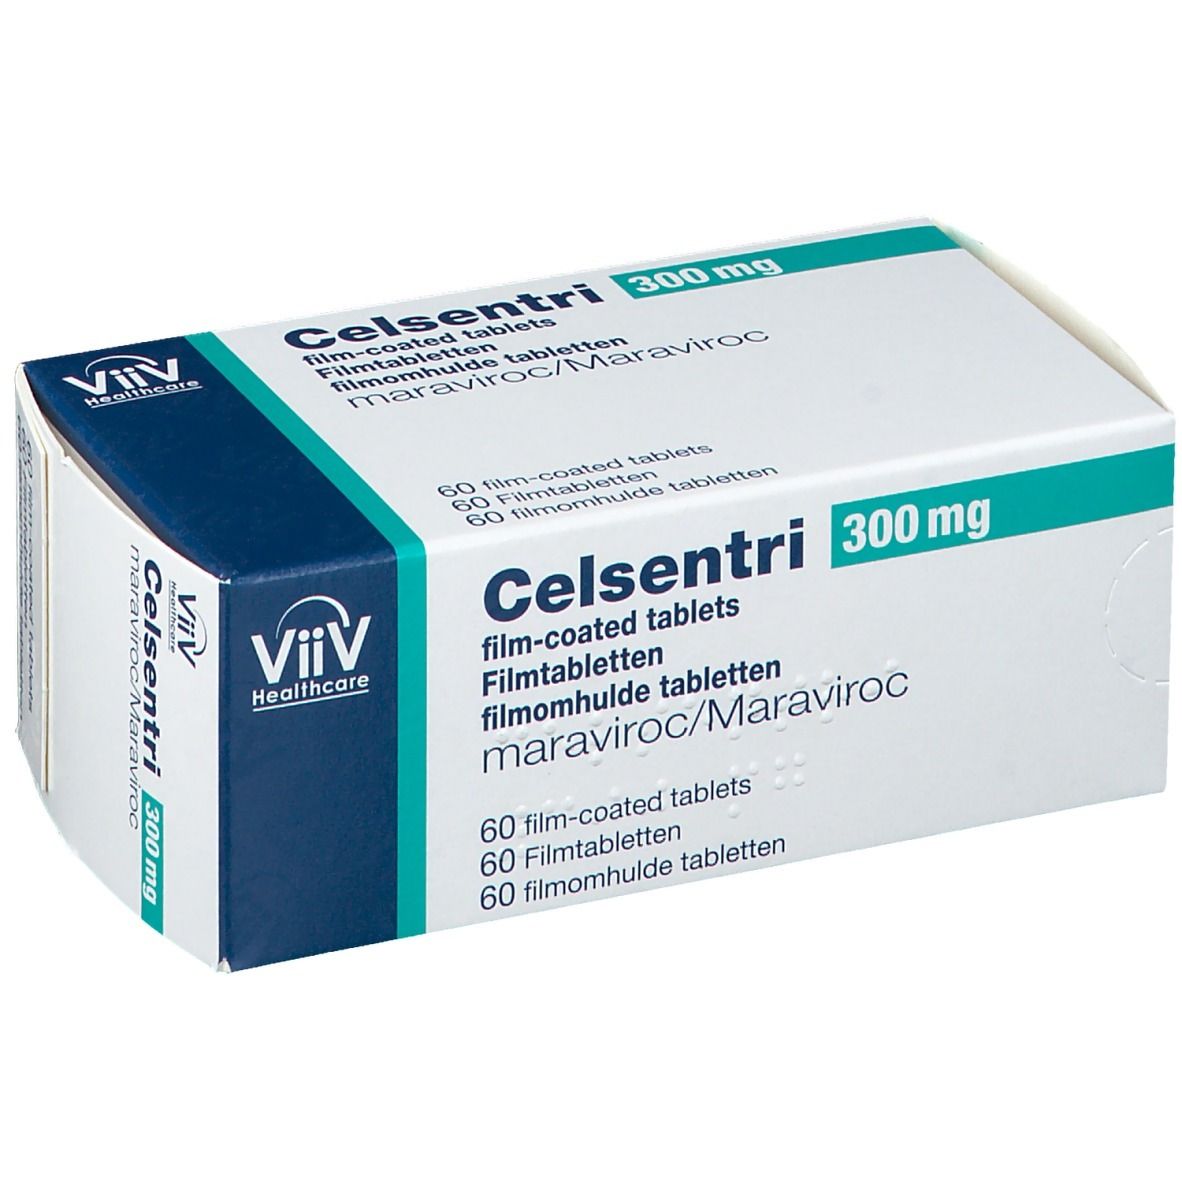 Celsentri 300 mg